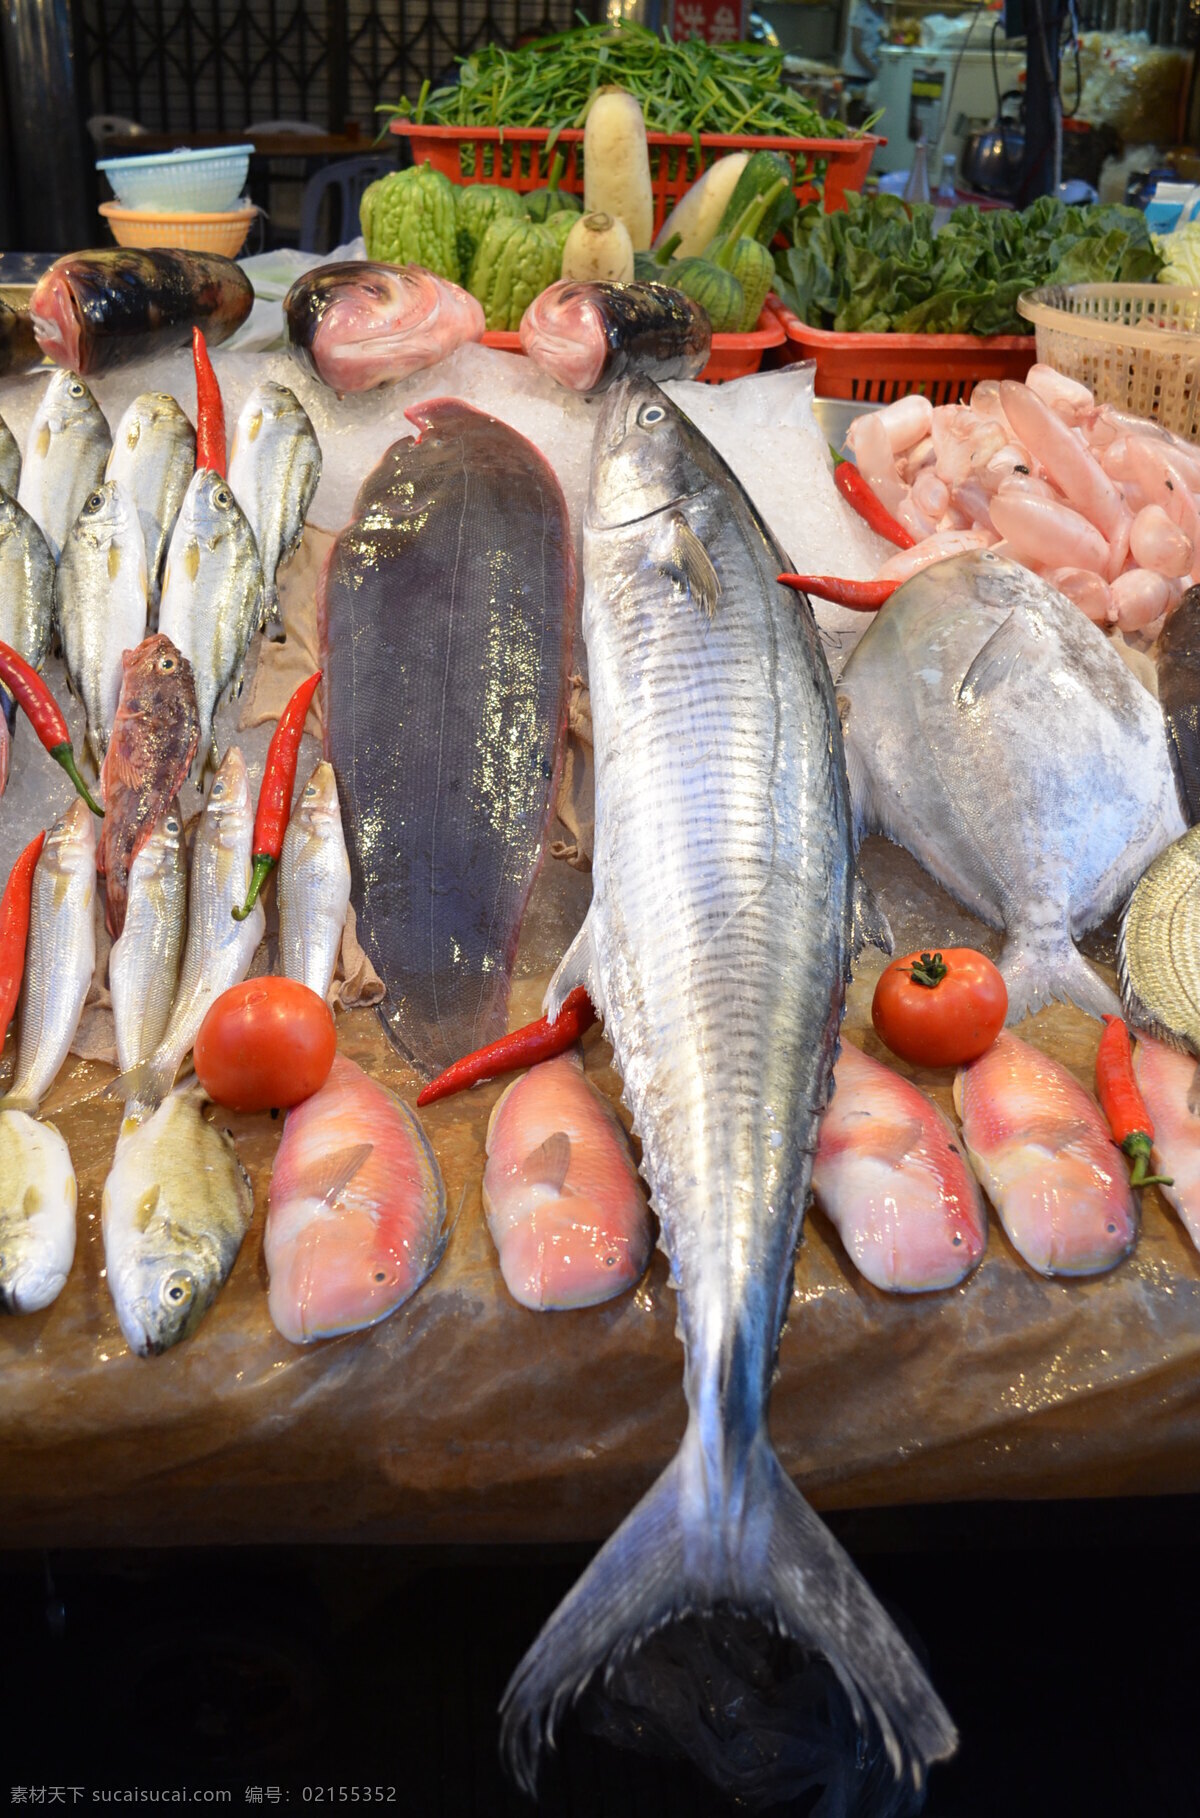 菜市场 夜市 市场 鱼 海鲜 大排档 美食 新鲜 食物原料 枪鱼 银鱼 餐饮美食